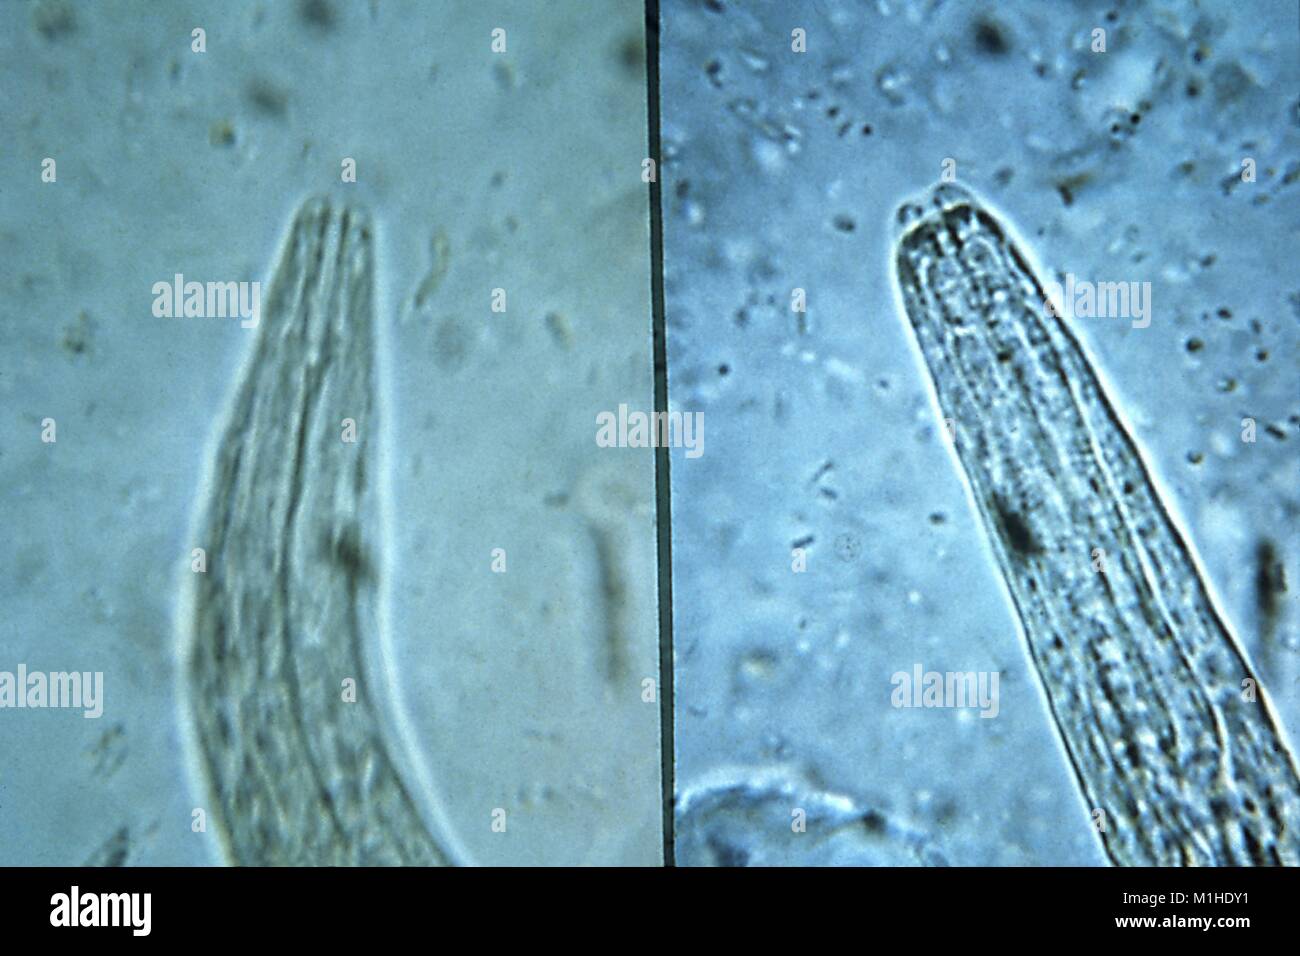 Hookworm e strongyloides, apparato boccale di rhabditiform staged larve ha rivelato nella micrografia film, 1982. Immagine cortesia di centri per il controllo delle malattie (CDC) / Dr Mae Melvin. () Foto Stock